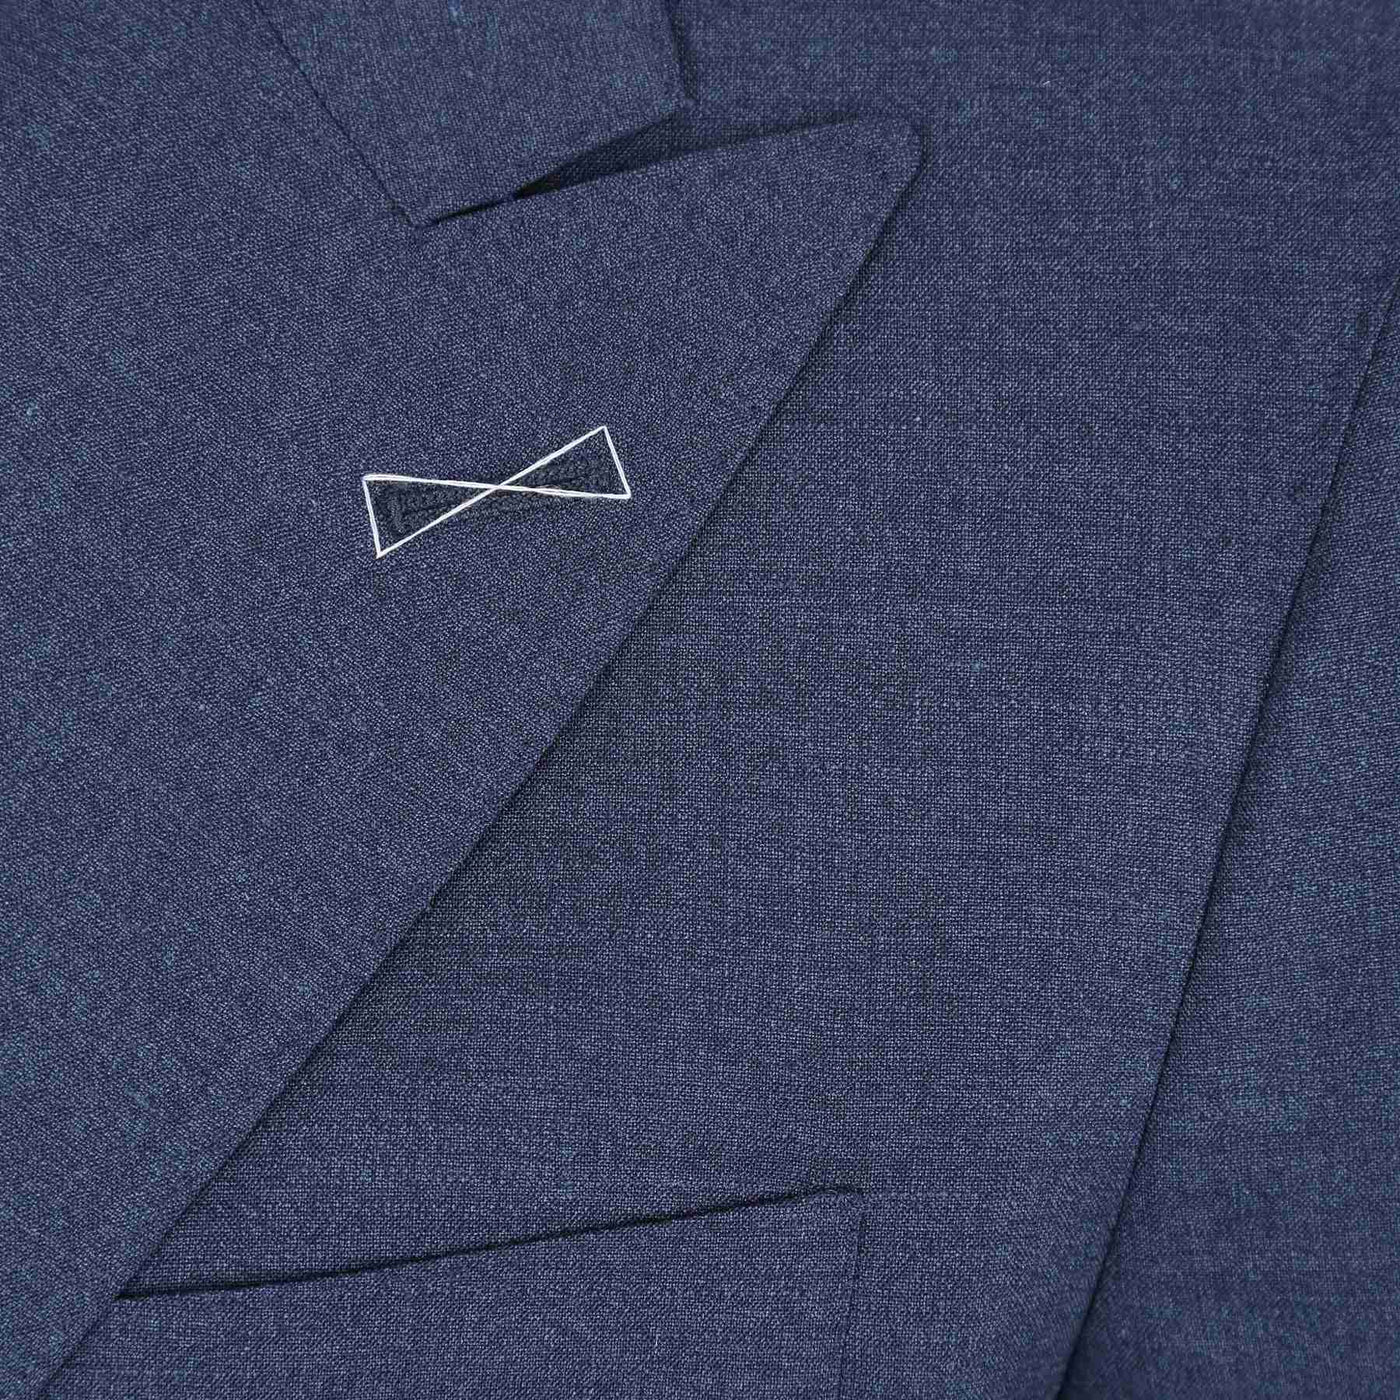 Norton Barrie Bespoke Suit in Denim Blue Lapel